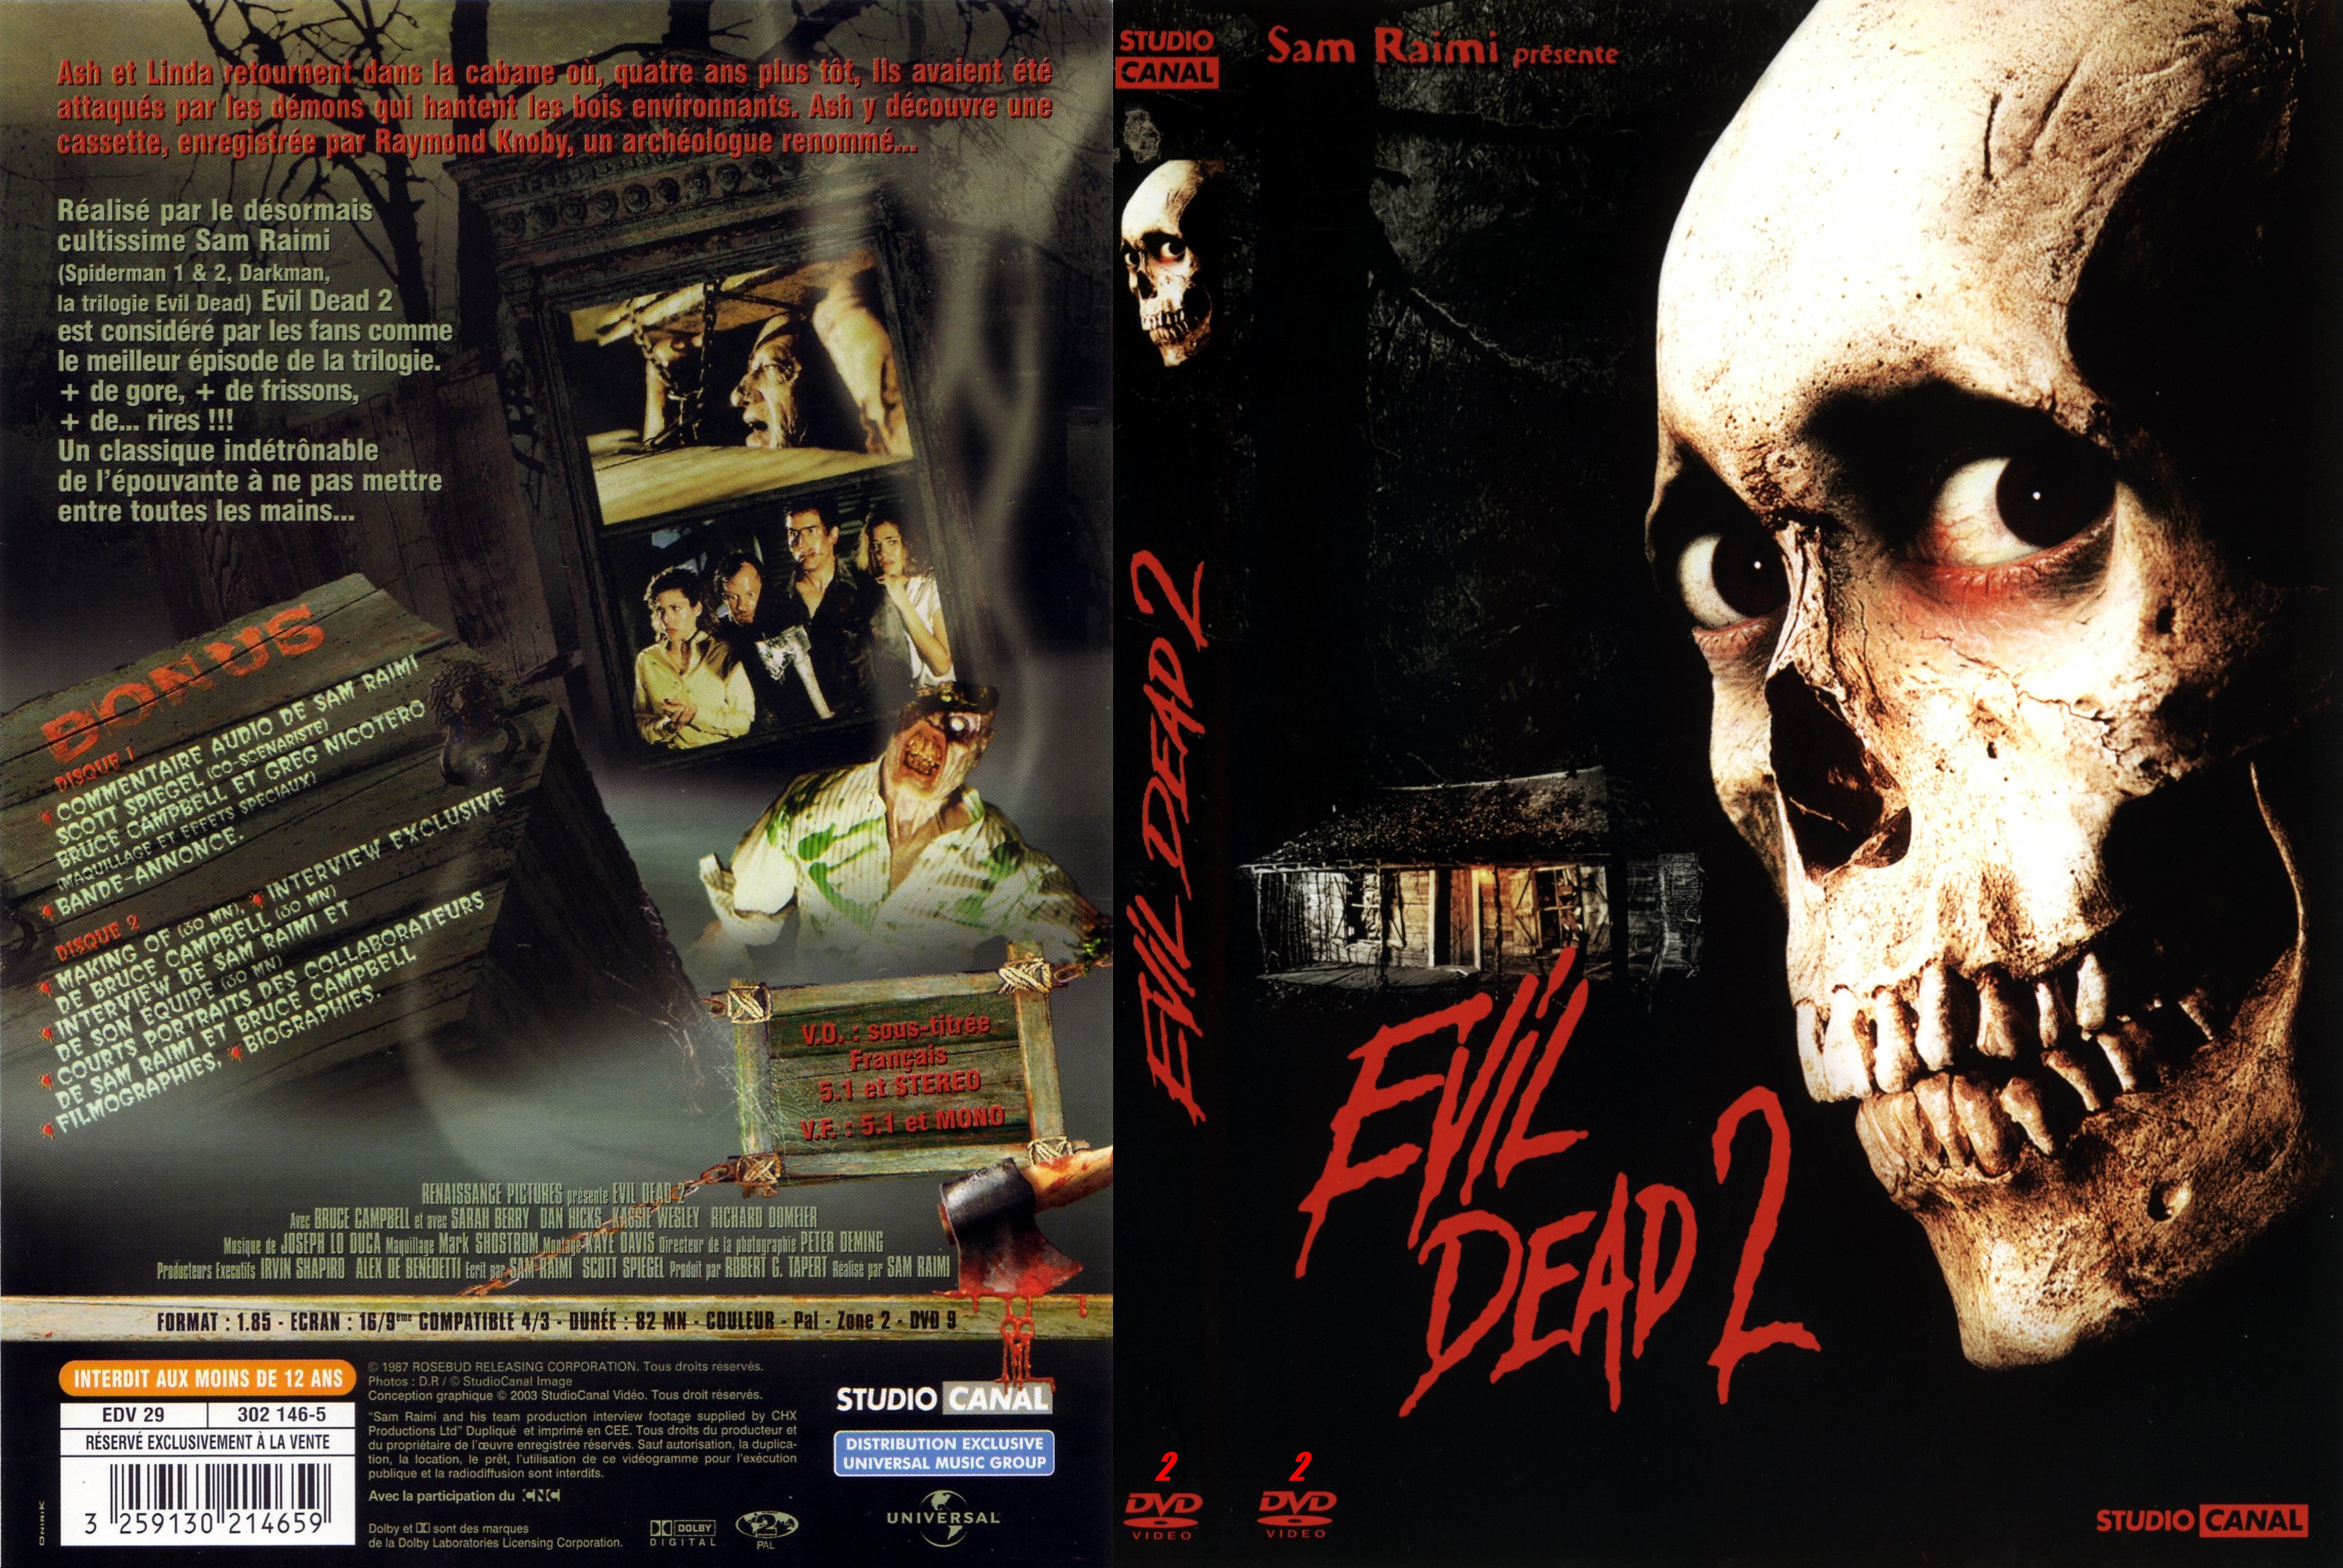 Jaquette DVD Evil dead 2 v2